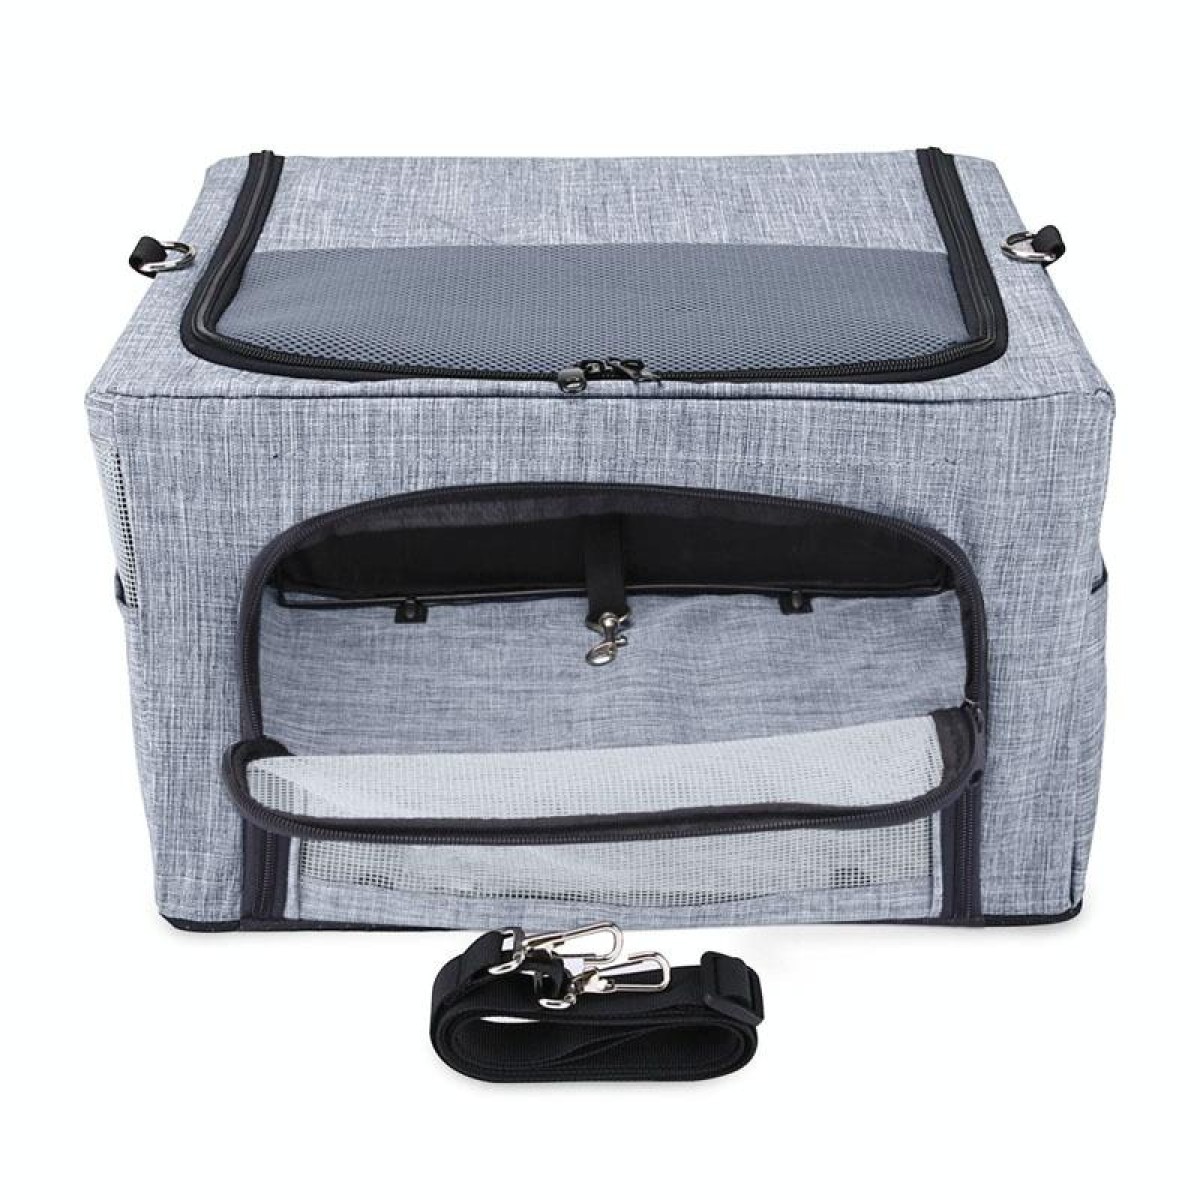 Car Pet Kennel Bag Foldable Storage Dog Passenger Basket, Model: Conventional(Gray)